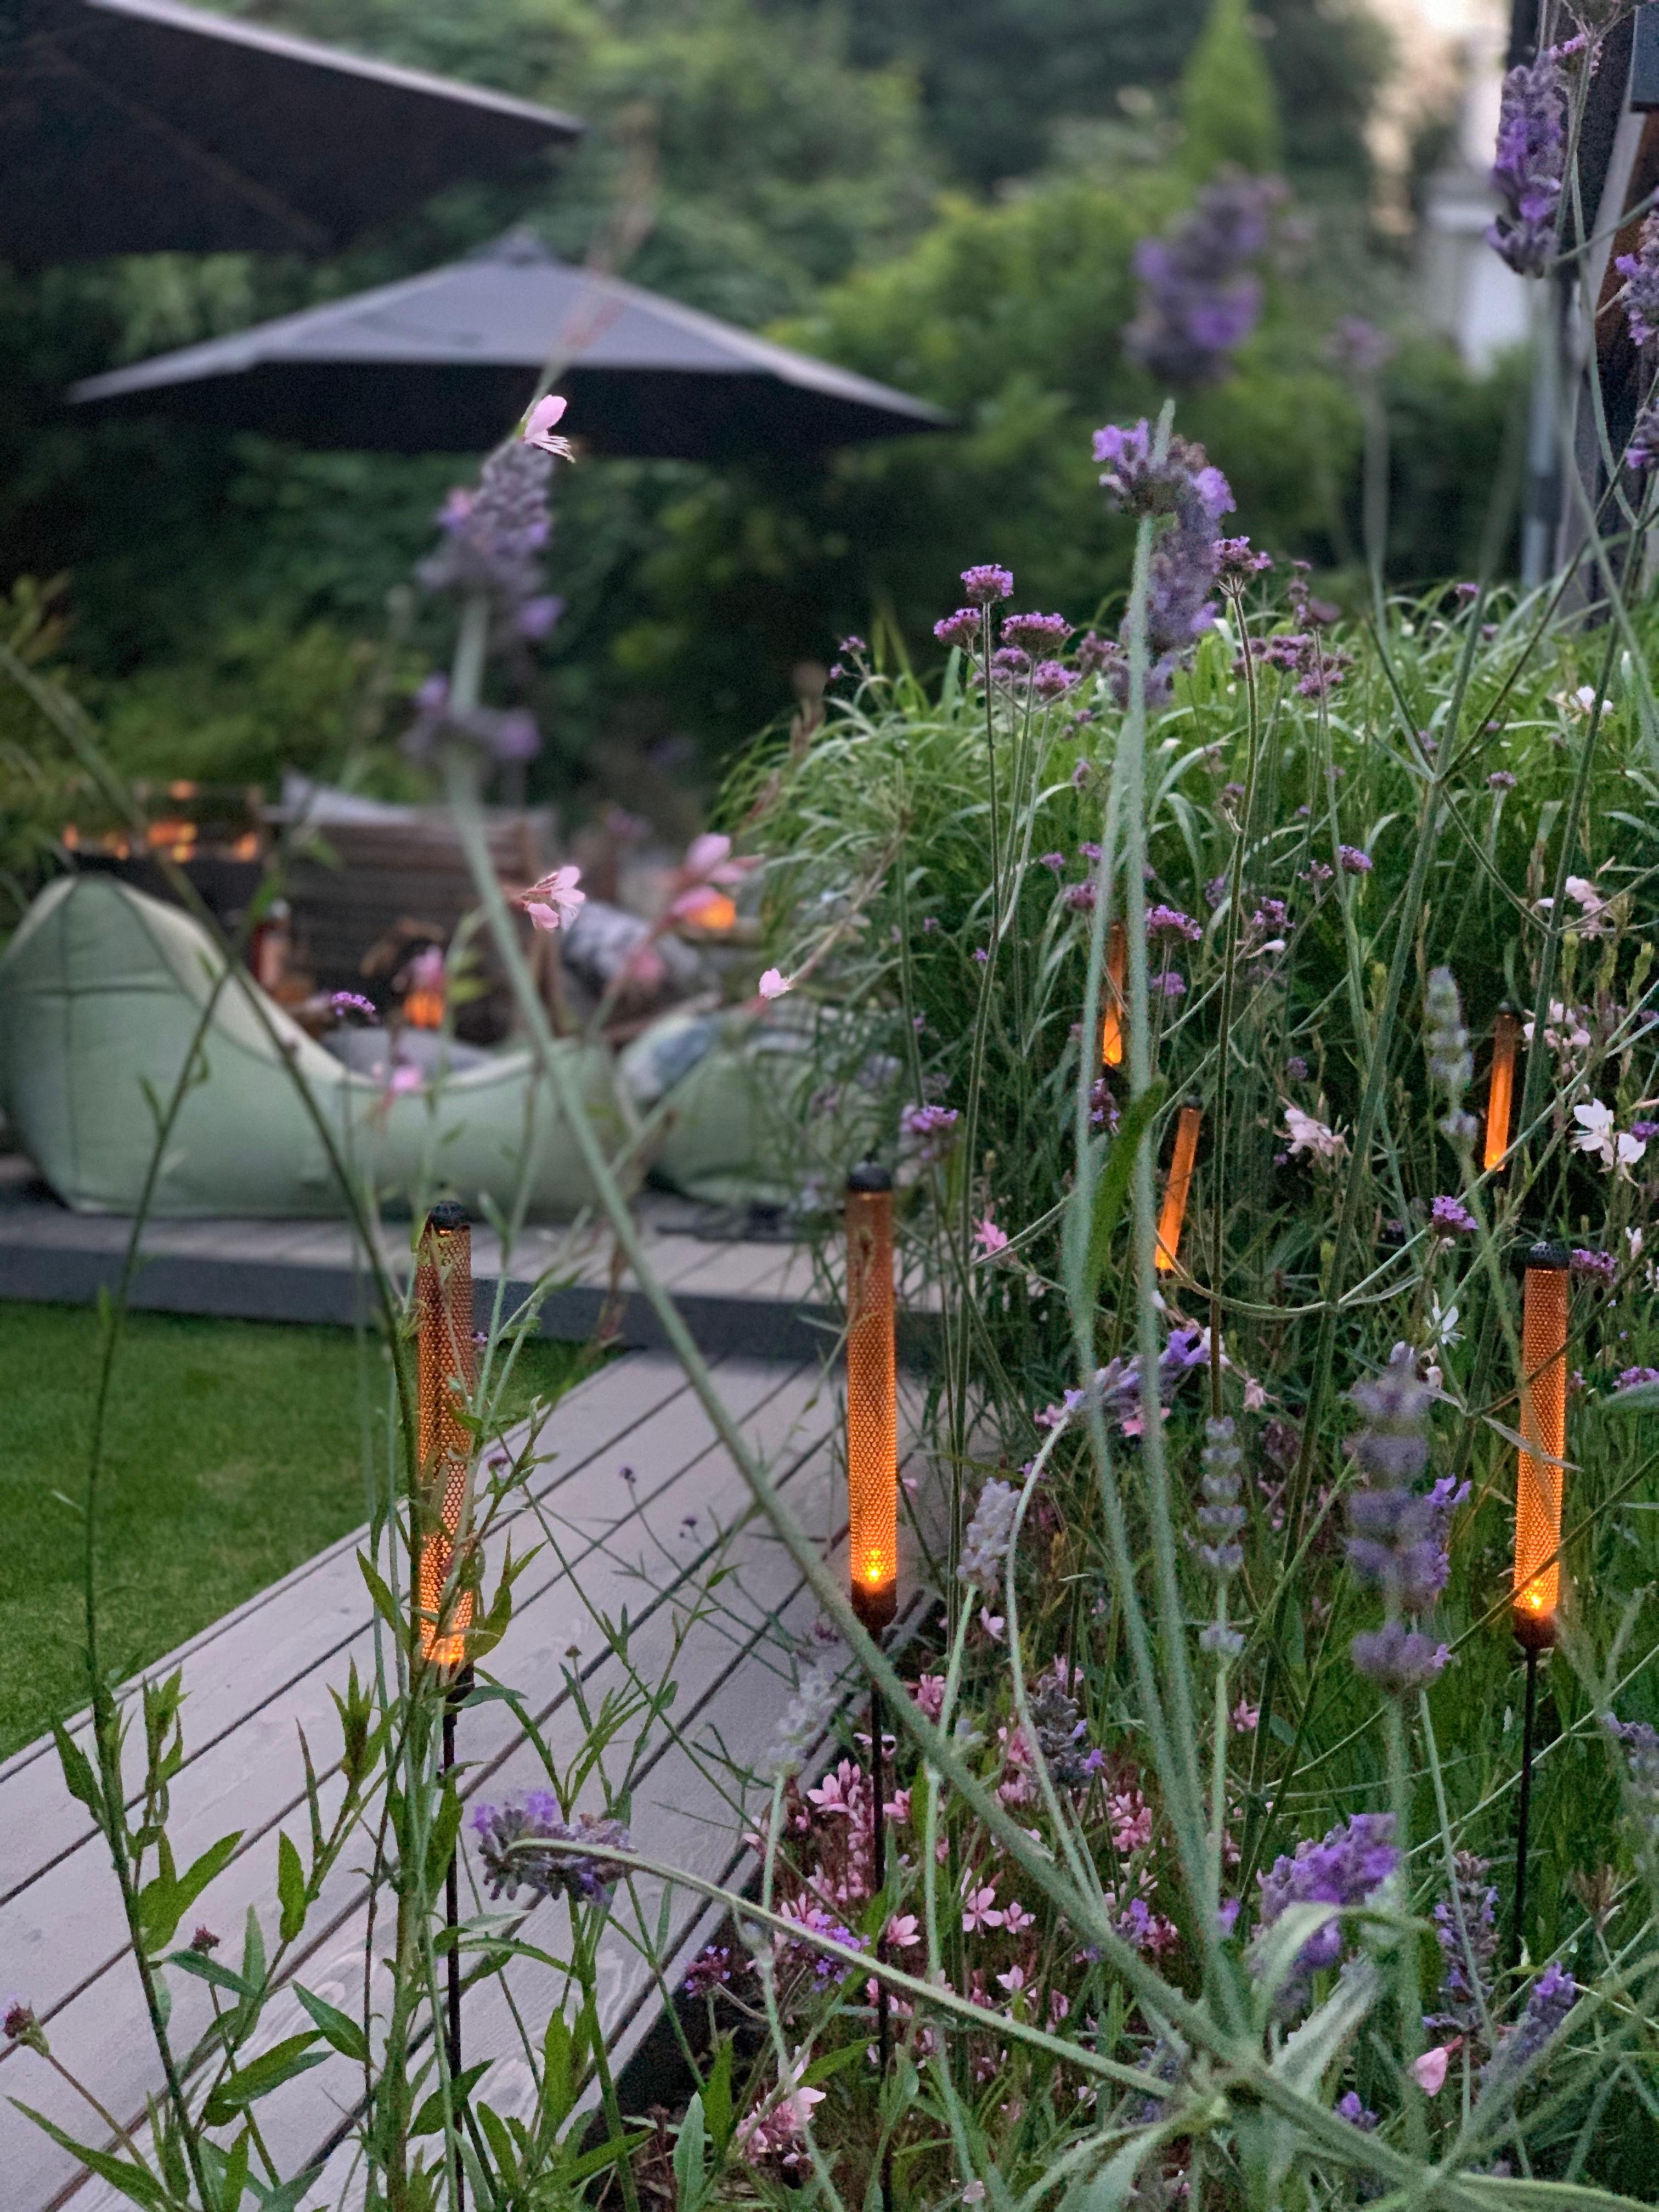 Cozy Evening...🖤
#garten #terrasse #sommerabend #gardening #summervibes #sommer #terrassengestaltung #interior